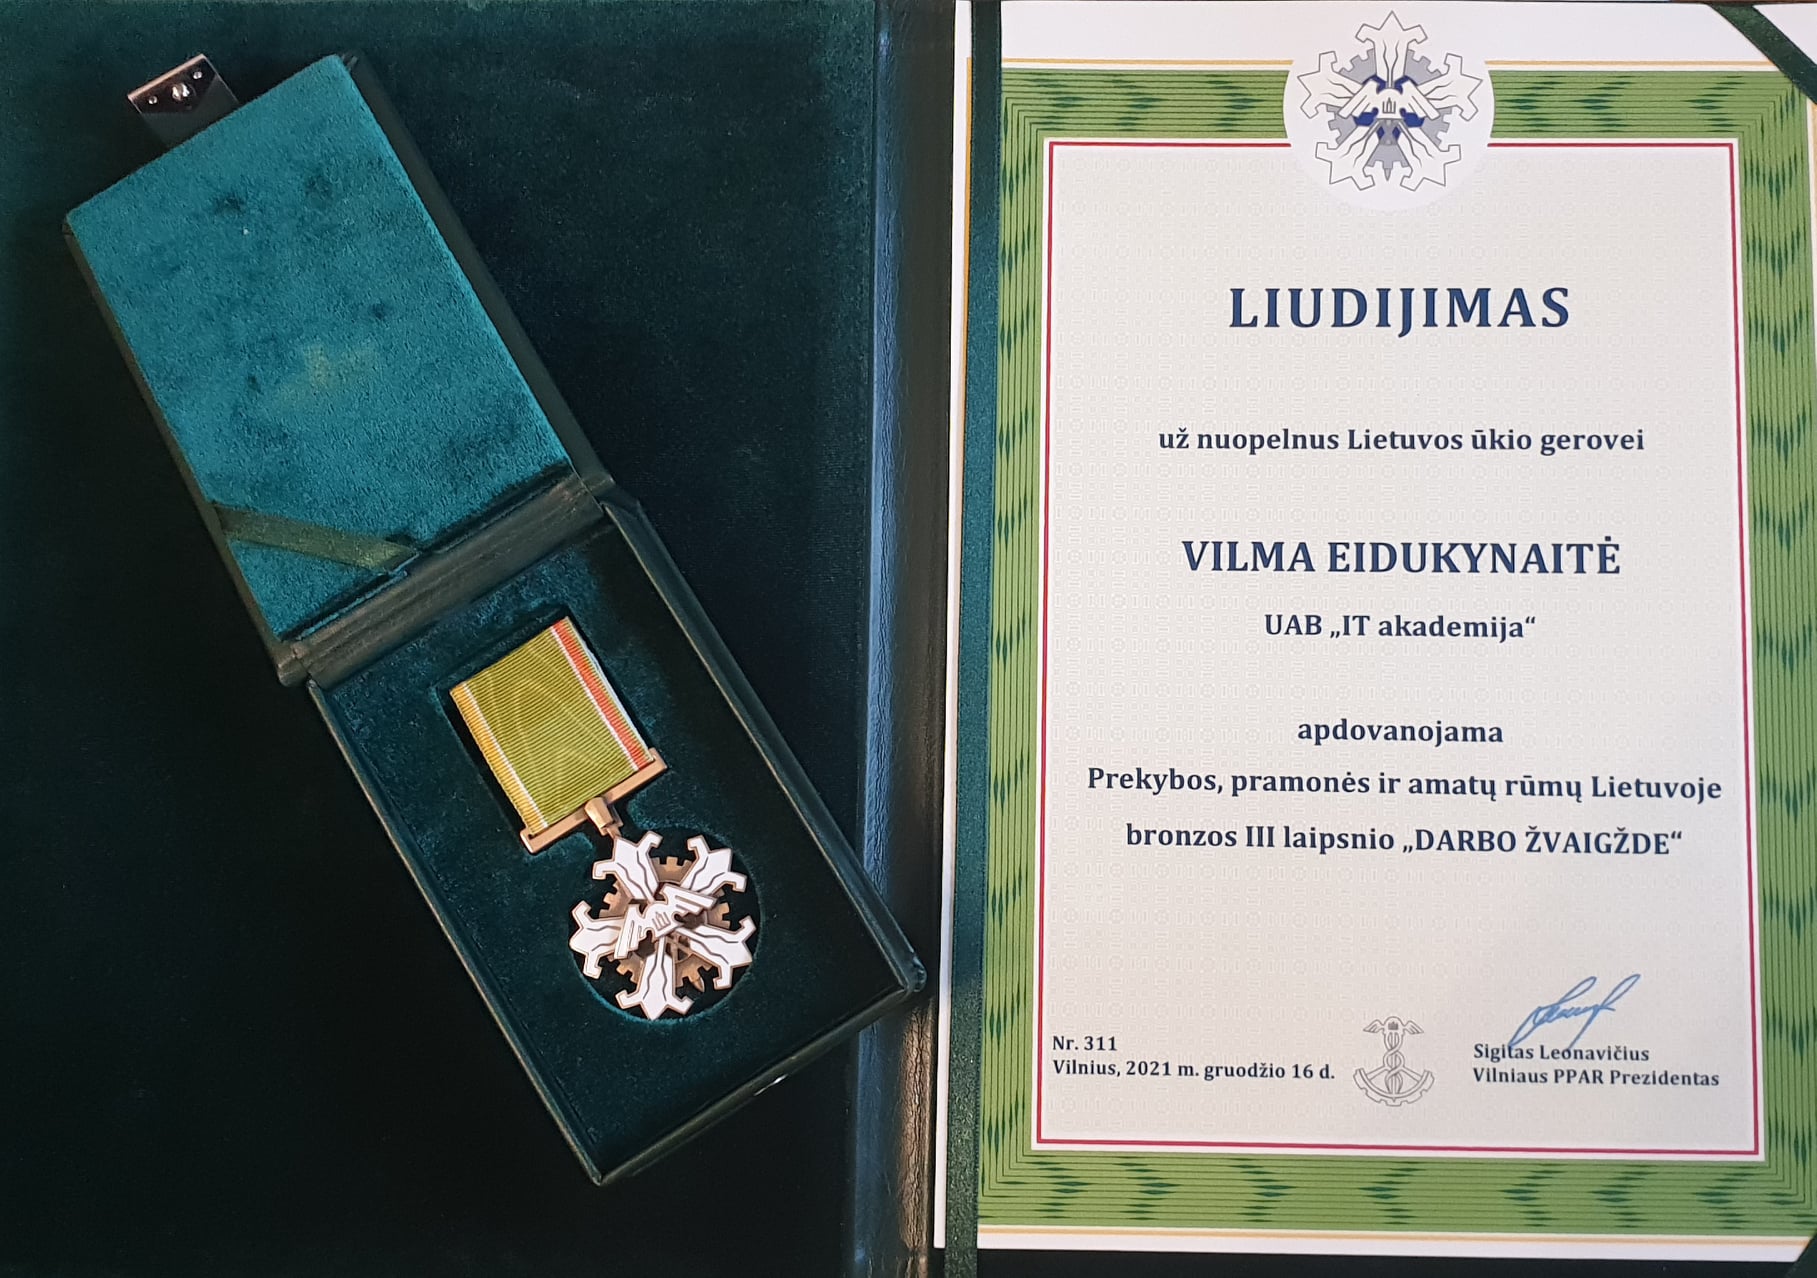 UAB IT AKADEMIJA direktorei Vilmai Eidukynaitei įteikta bronzos III laipsnio „Darbo žvaigždė“